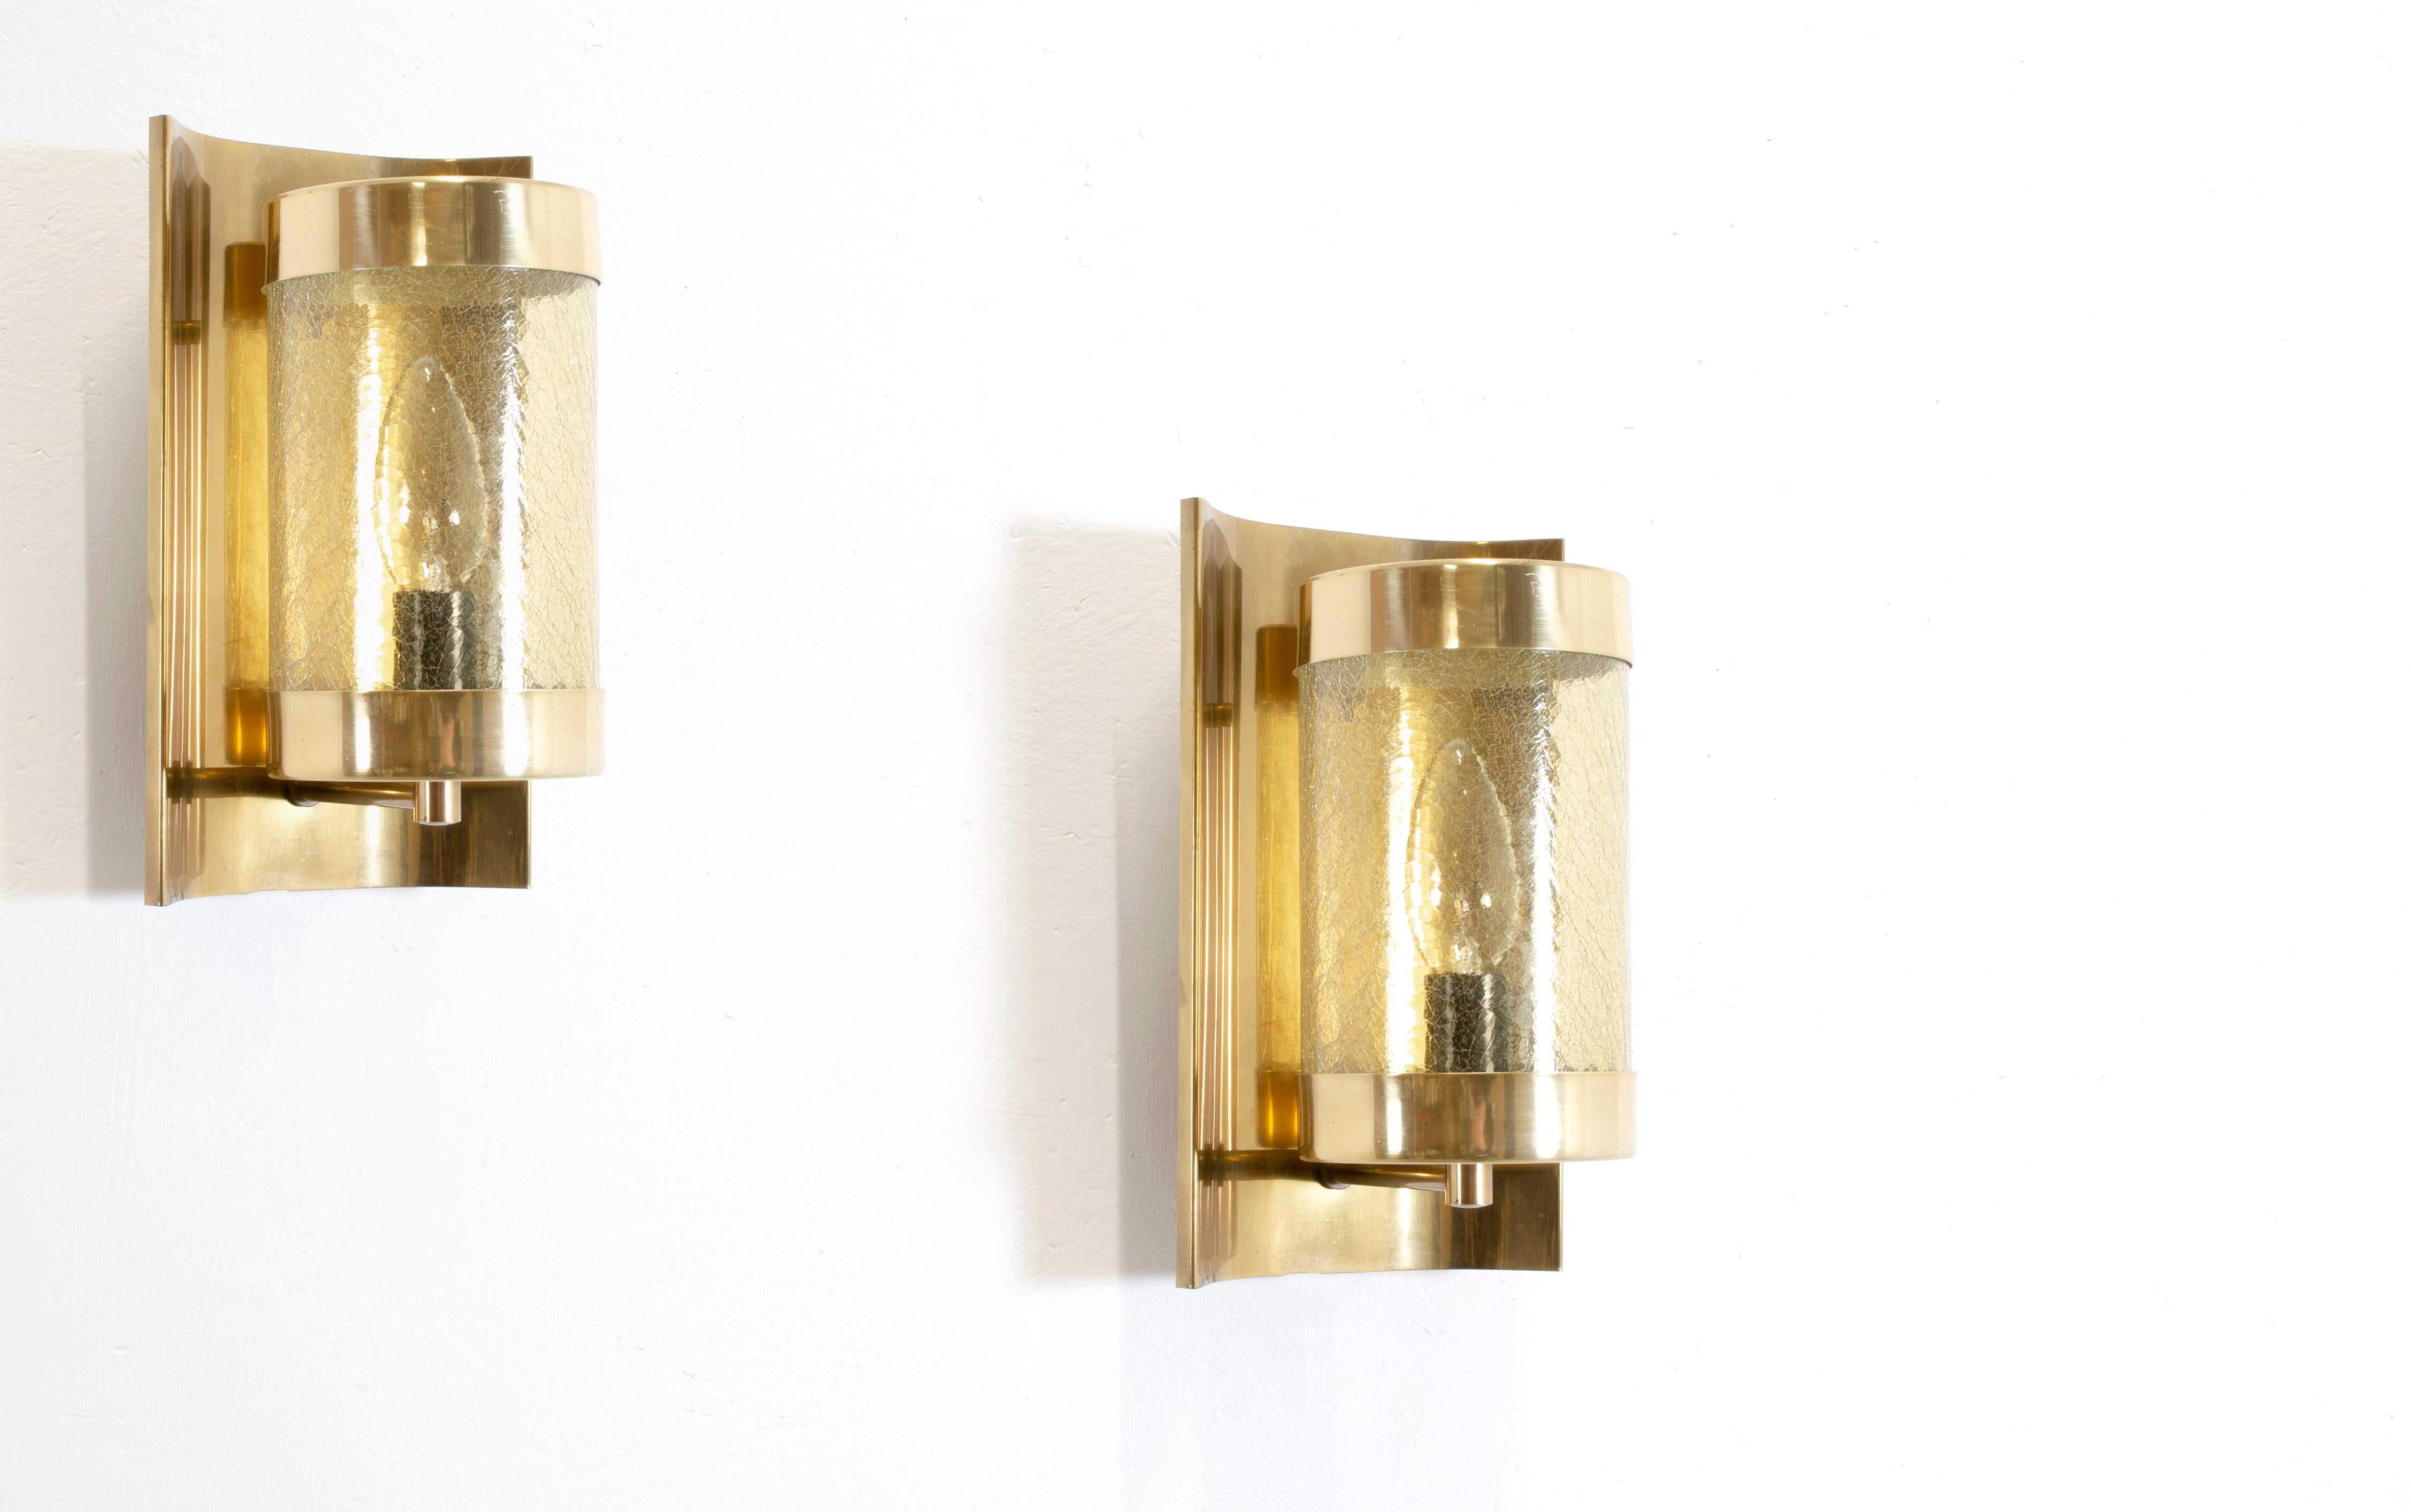 Wunderschönes Paar Wandleuchten aus Messing mit Glasschirmen. Entworfen und hergestellt in Norwegen in der zweiten Hälfte der 1970er Jahre. Beide Lampen sind voll funktionsfähig und in gutem Zustand. Max 40W, E14 Glühbirnen.